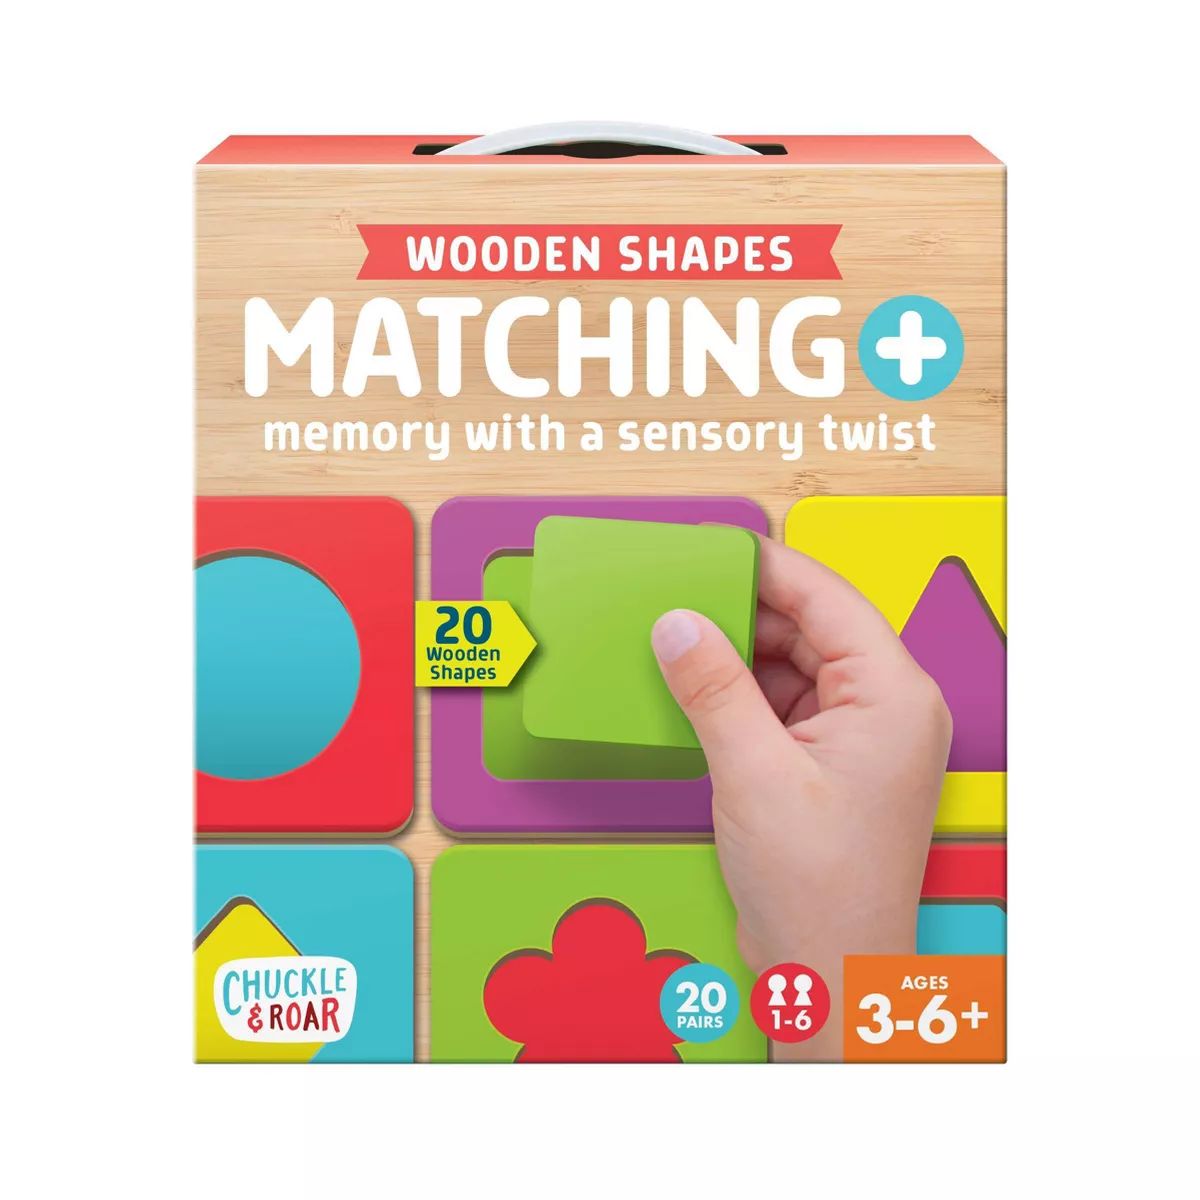 Chuckle & Roar Matching + Wooden Sensory Kids Game | Target